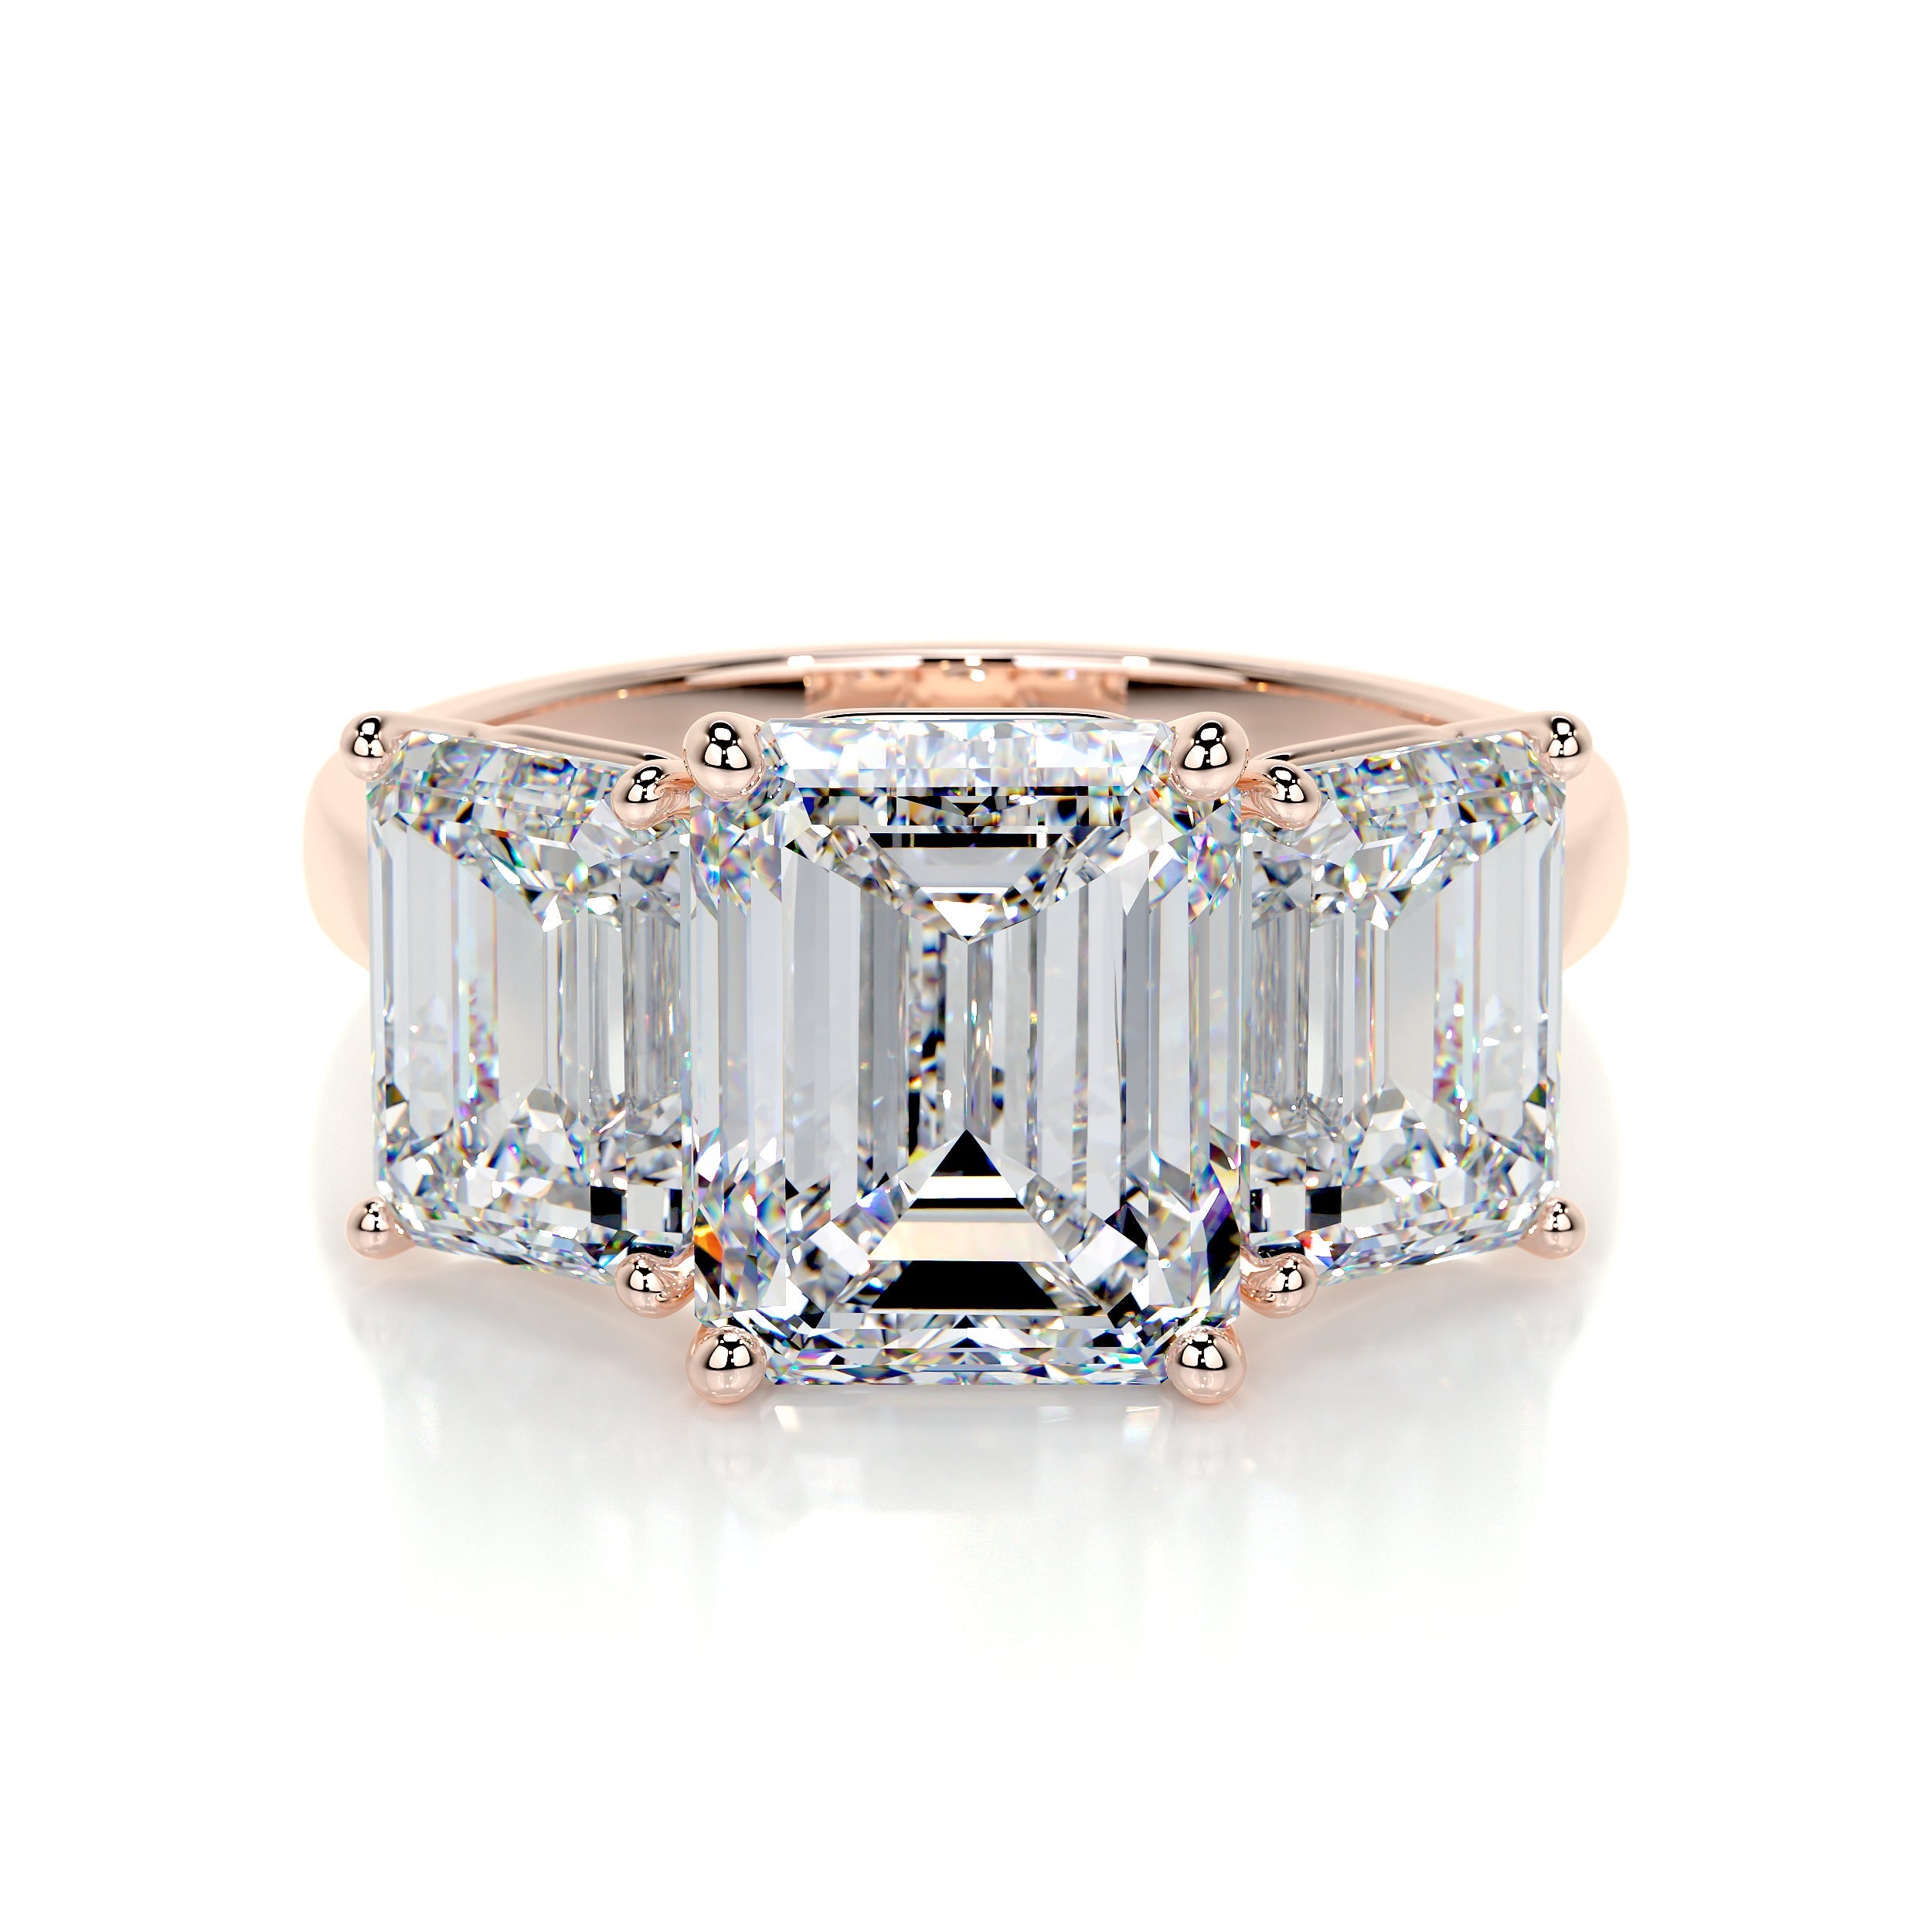 Amanda Lab Grown Diamond Ring   (4 Carat) -14K Rose Gold